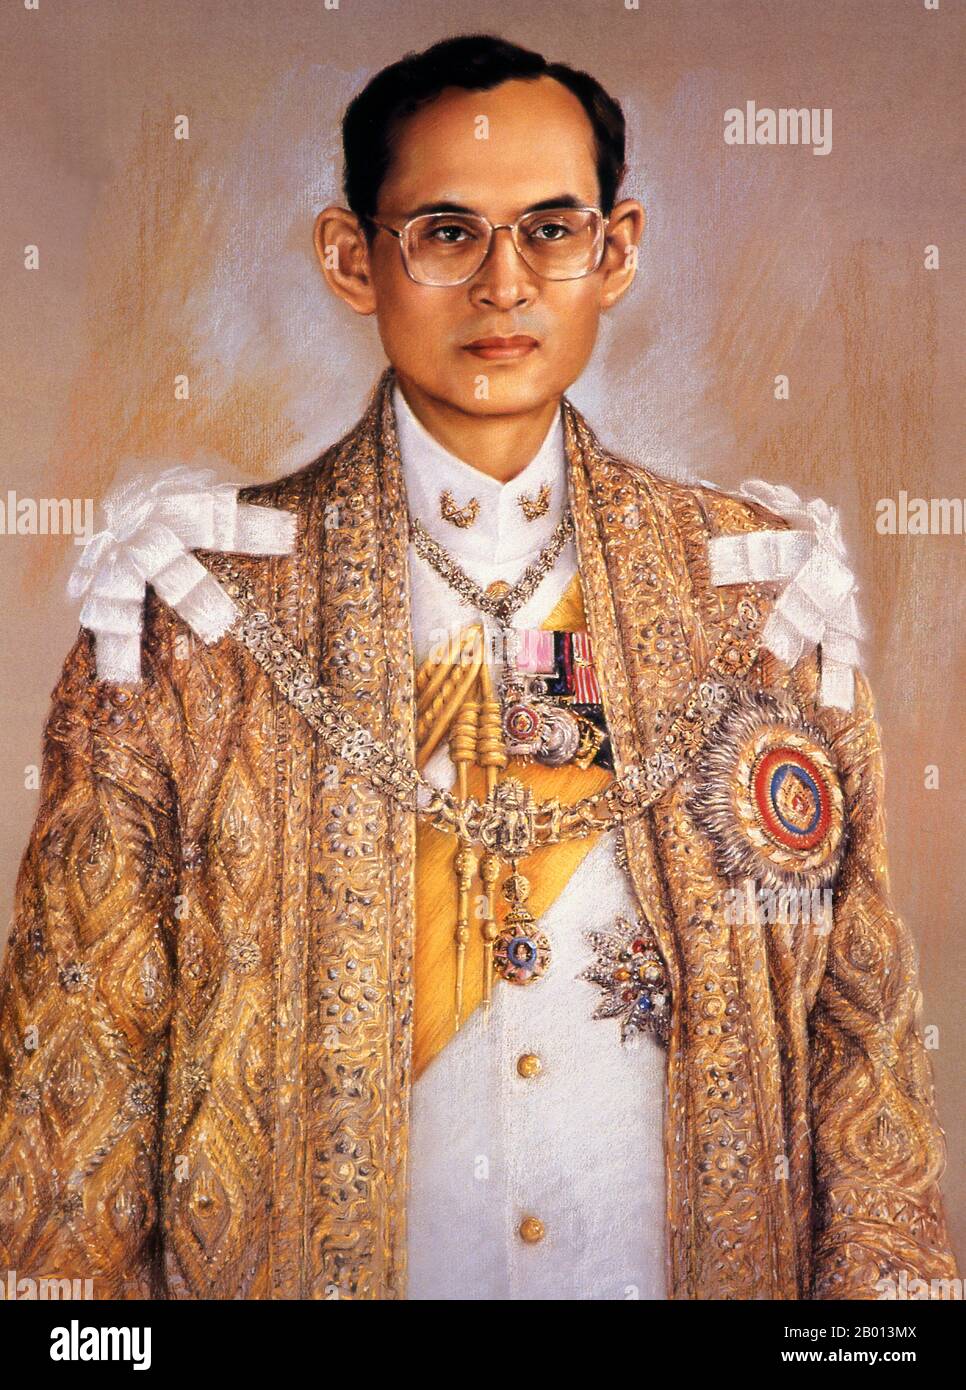 Thaïlande: Roi Rama IX, Bhumibol Adulyadej (5 décembre 1927 – 13 octobre 2016), 9e monarque de la dynastie Chakri. Peinture à l'huile sur toile, 20e siècle. Bhumibol Adulyadej (Phumiphon Adunyadet) était le 9e roi de Thaïlande. Il était connu sous le nom de Rama IX, et au sein de la famille royale thaïlandaise et de proches associés simplement comme Lek. Régnant depuis le 9 juin 1946, il était l'un des chefs d'État les plus longtemps au monde et le monarque le plus ancien de l'histoire thaïlandaise. Banque D'Images